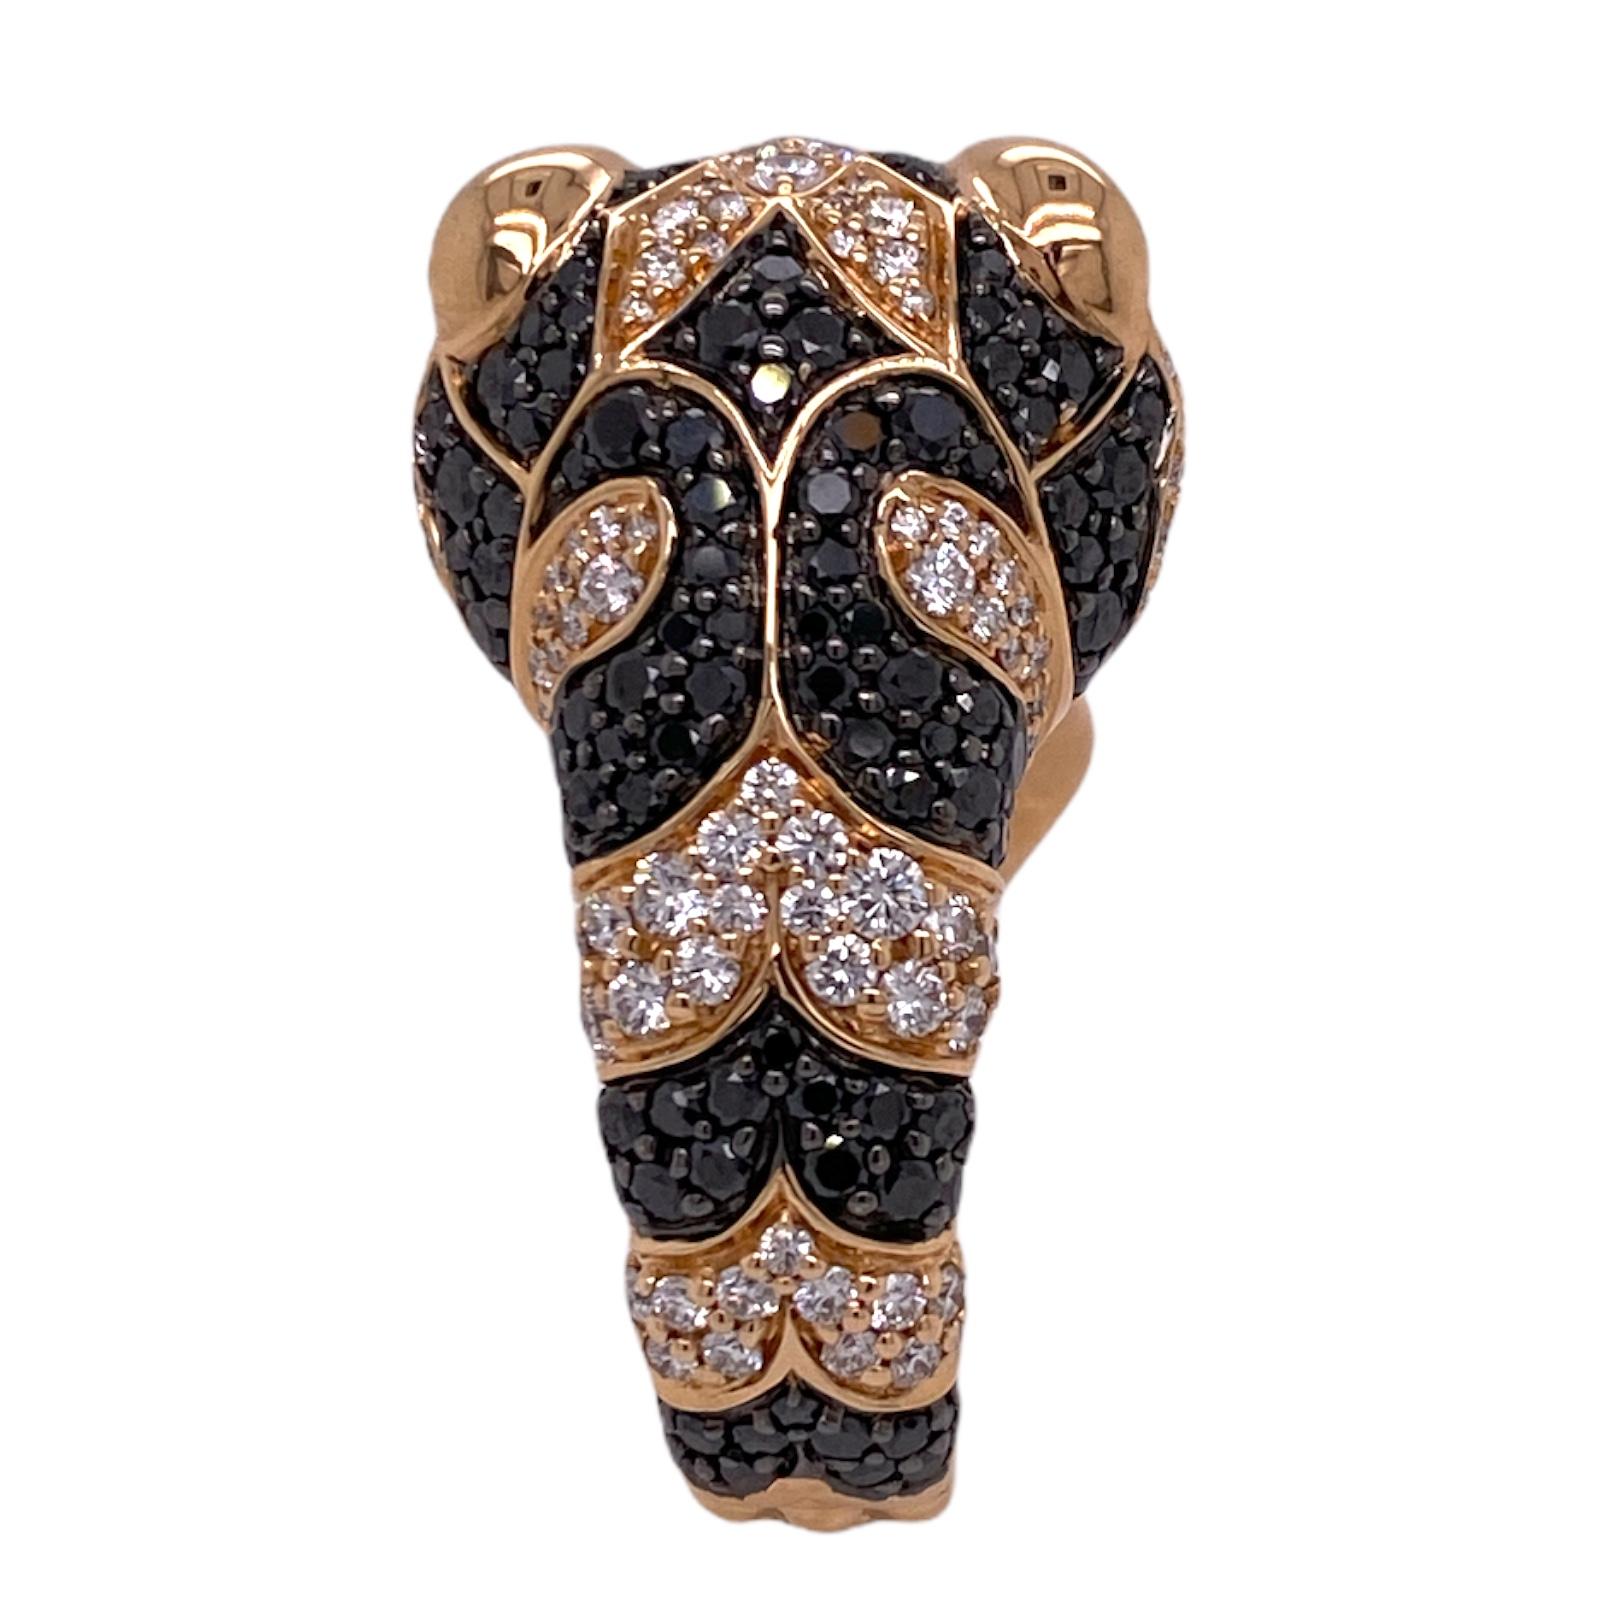 Round Cut Gucci Le Marche Des Merveilles Diamond Black Sapphire 18KRG Statement Ring